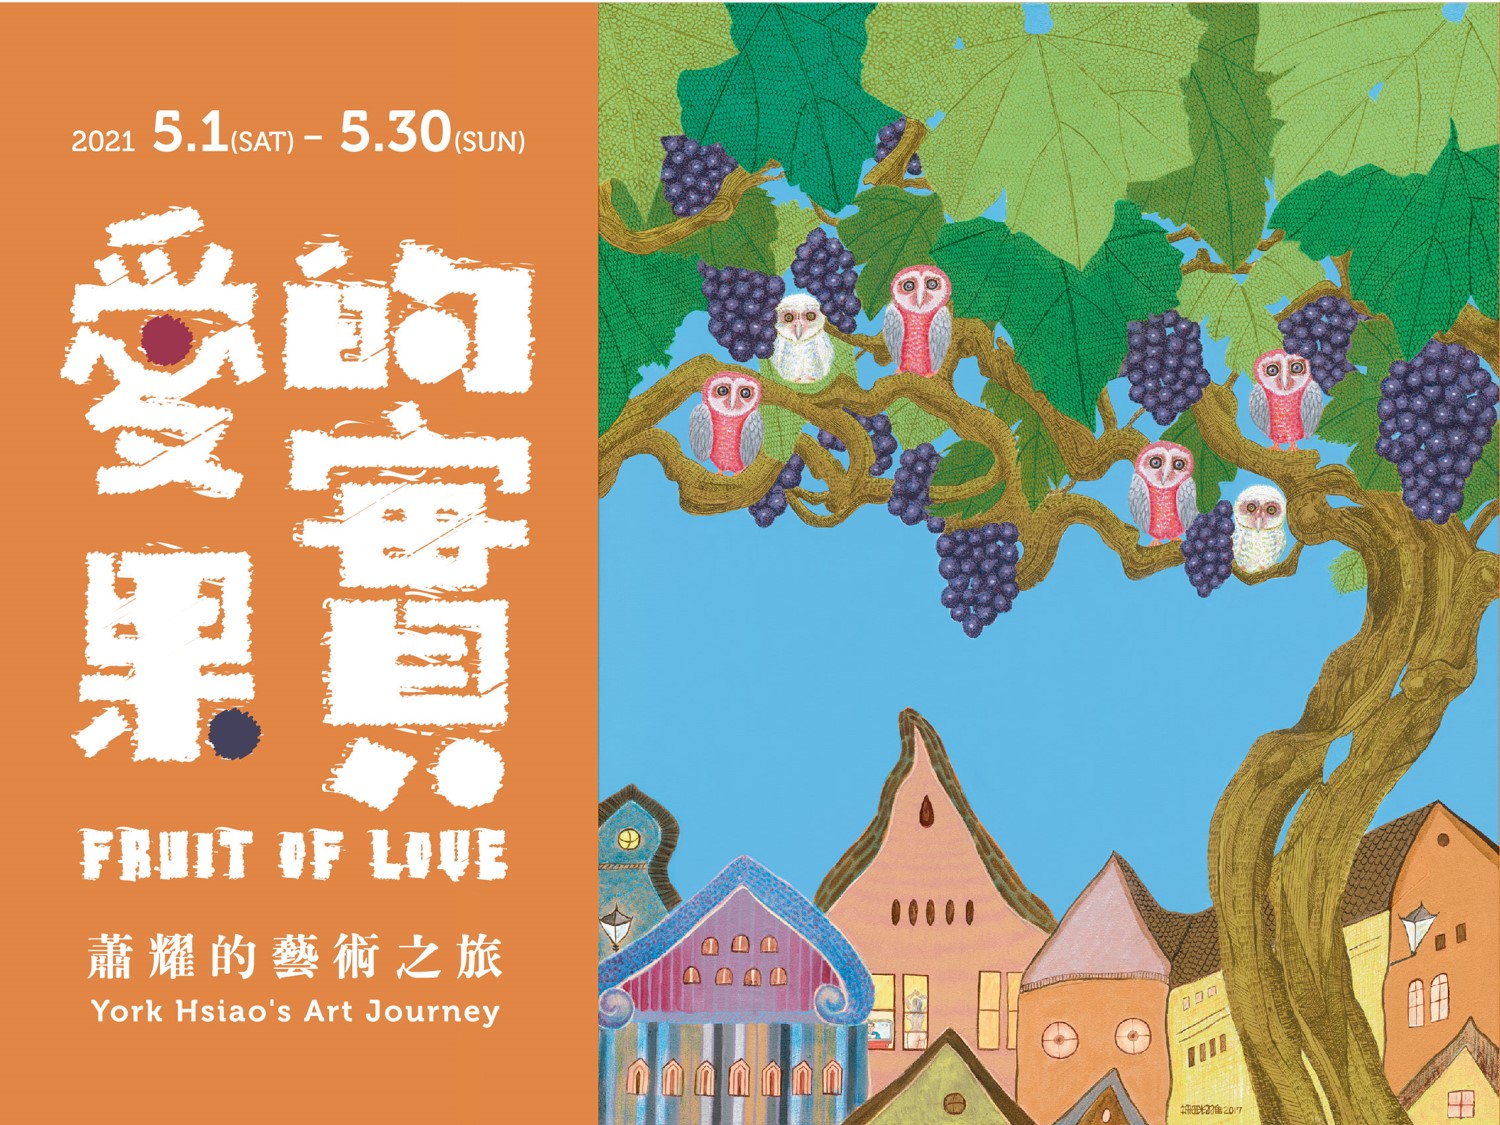 OK圖一、蕭耀《愛的果實》特展於5月1日起於鶯歌光點藝術中心展出